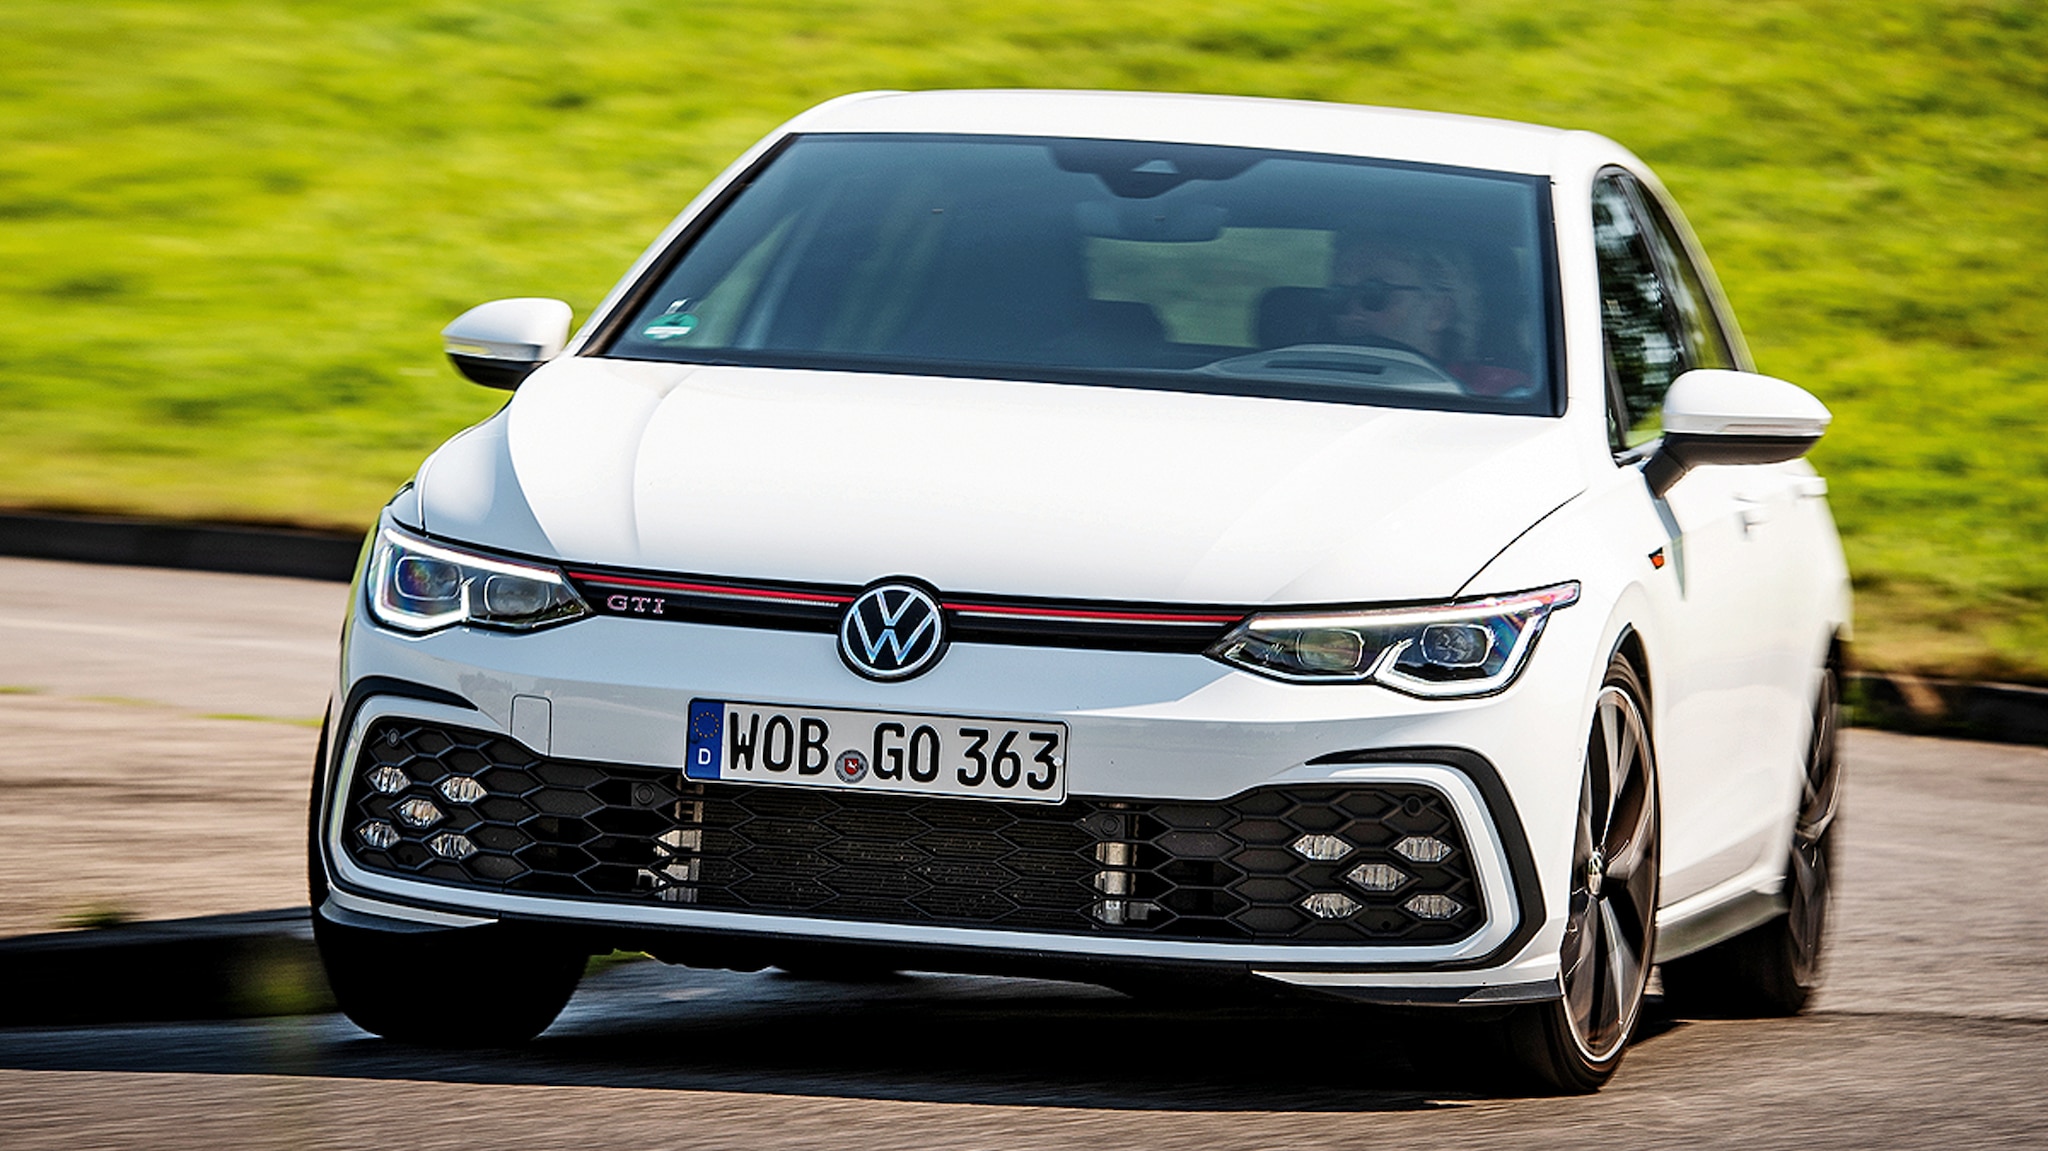 VW Golf GTI aktuell zu günstigen Konditionen im privaten Leasing